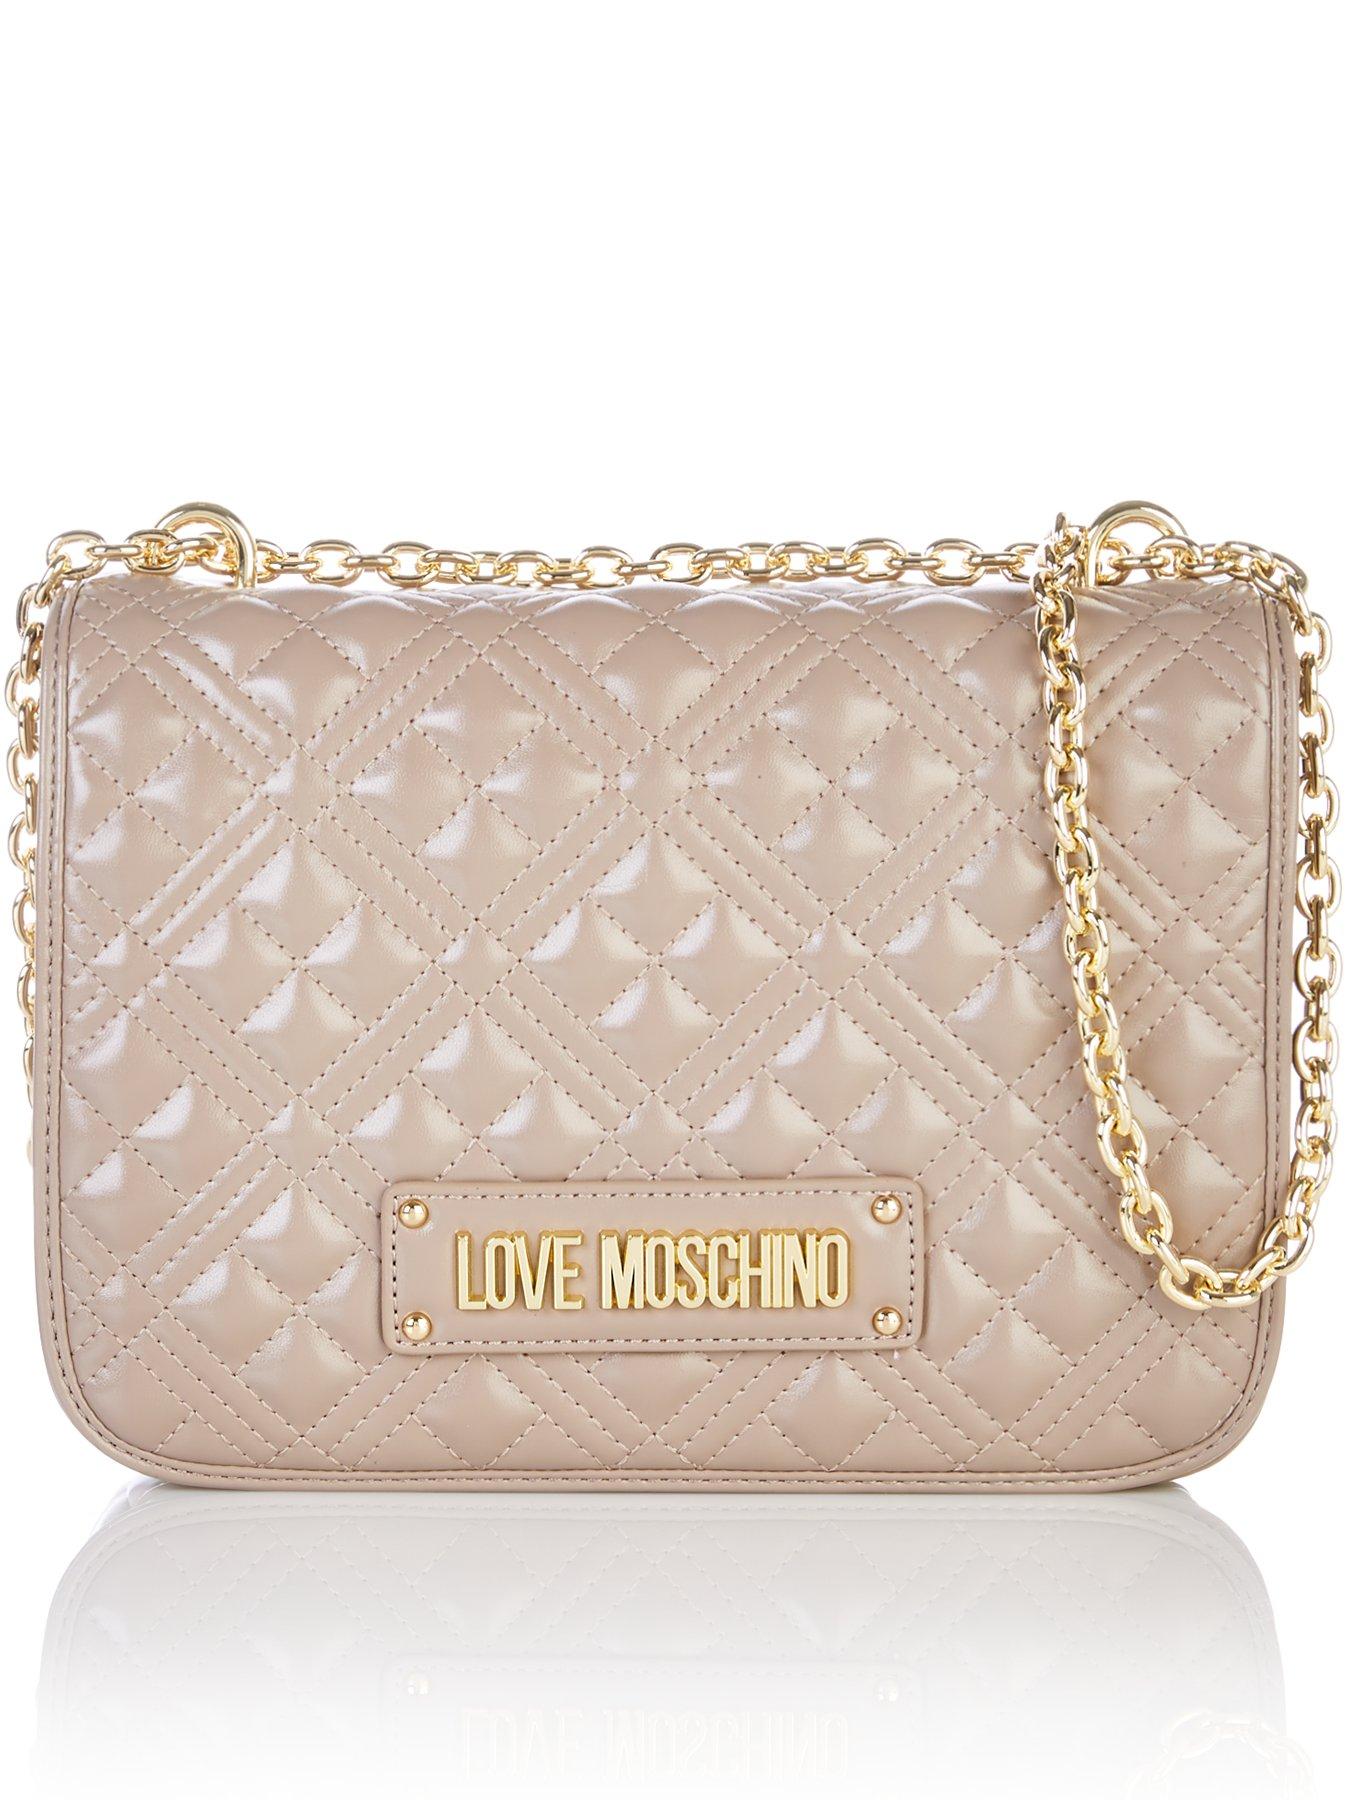 love moschino handbags uk 